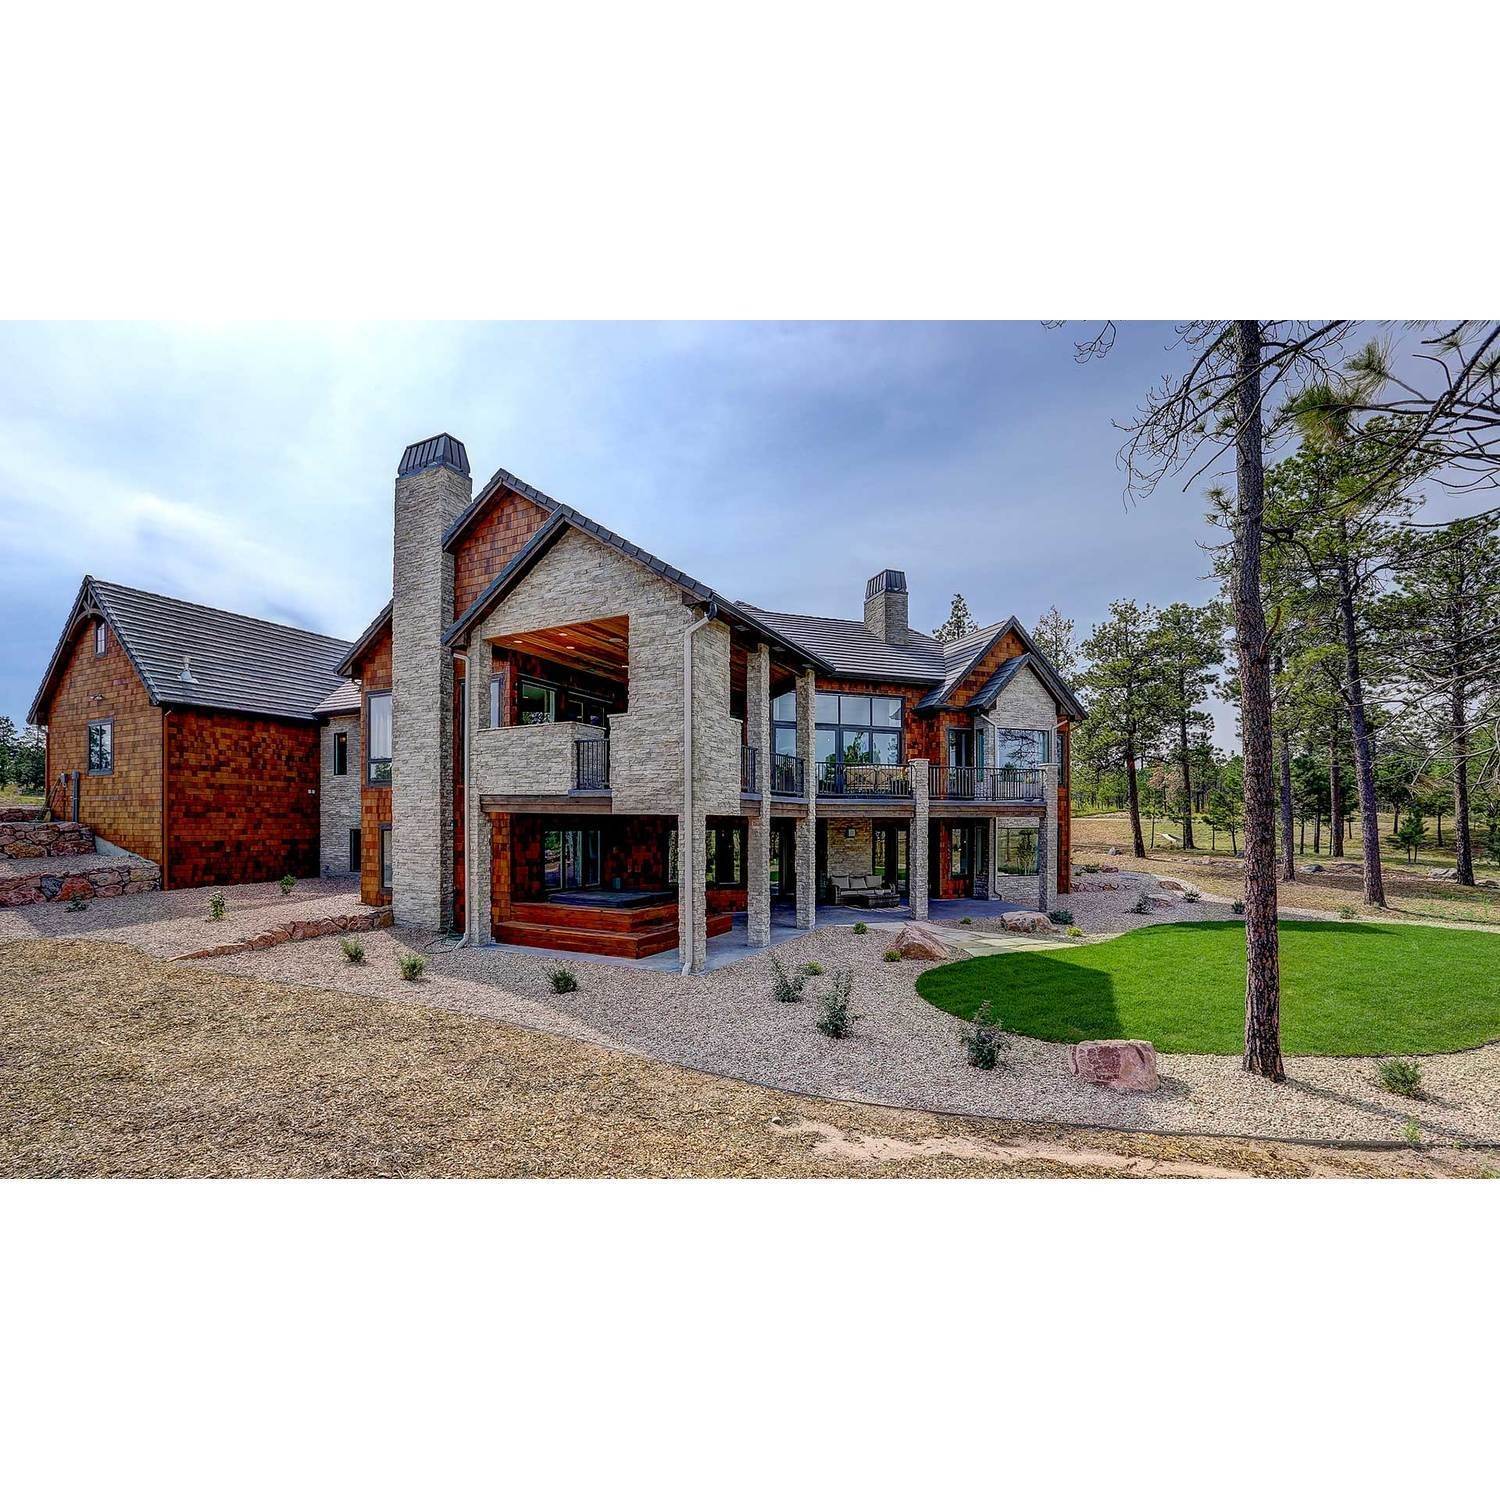 42. Galiant Homes Gebäude bei 4783 Farmingdale Dr, Colorado Springs, CO 80918